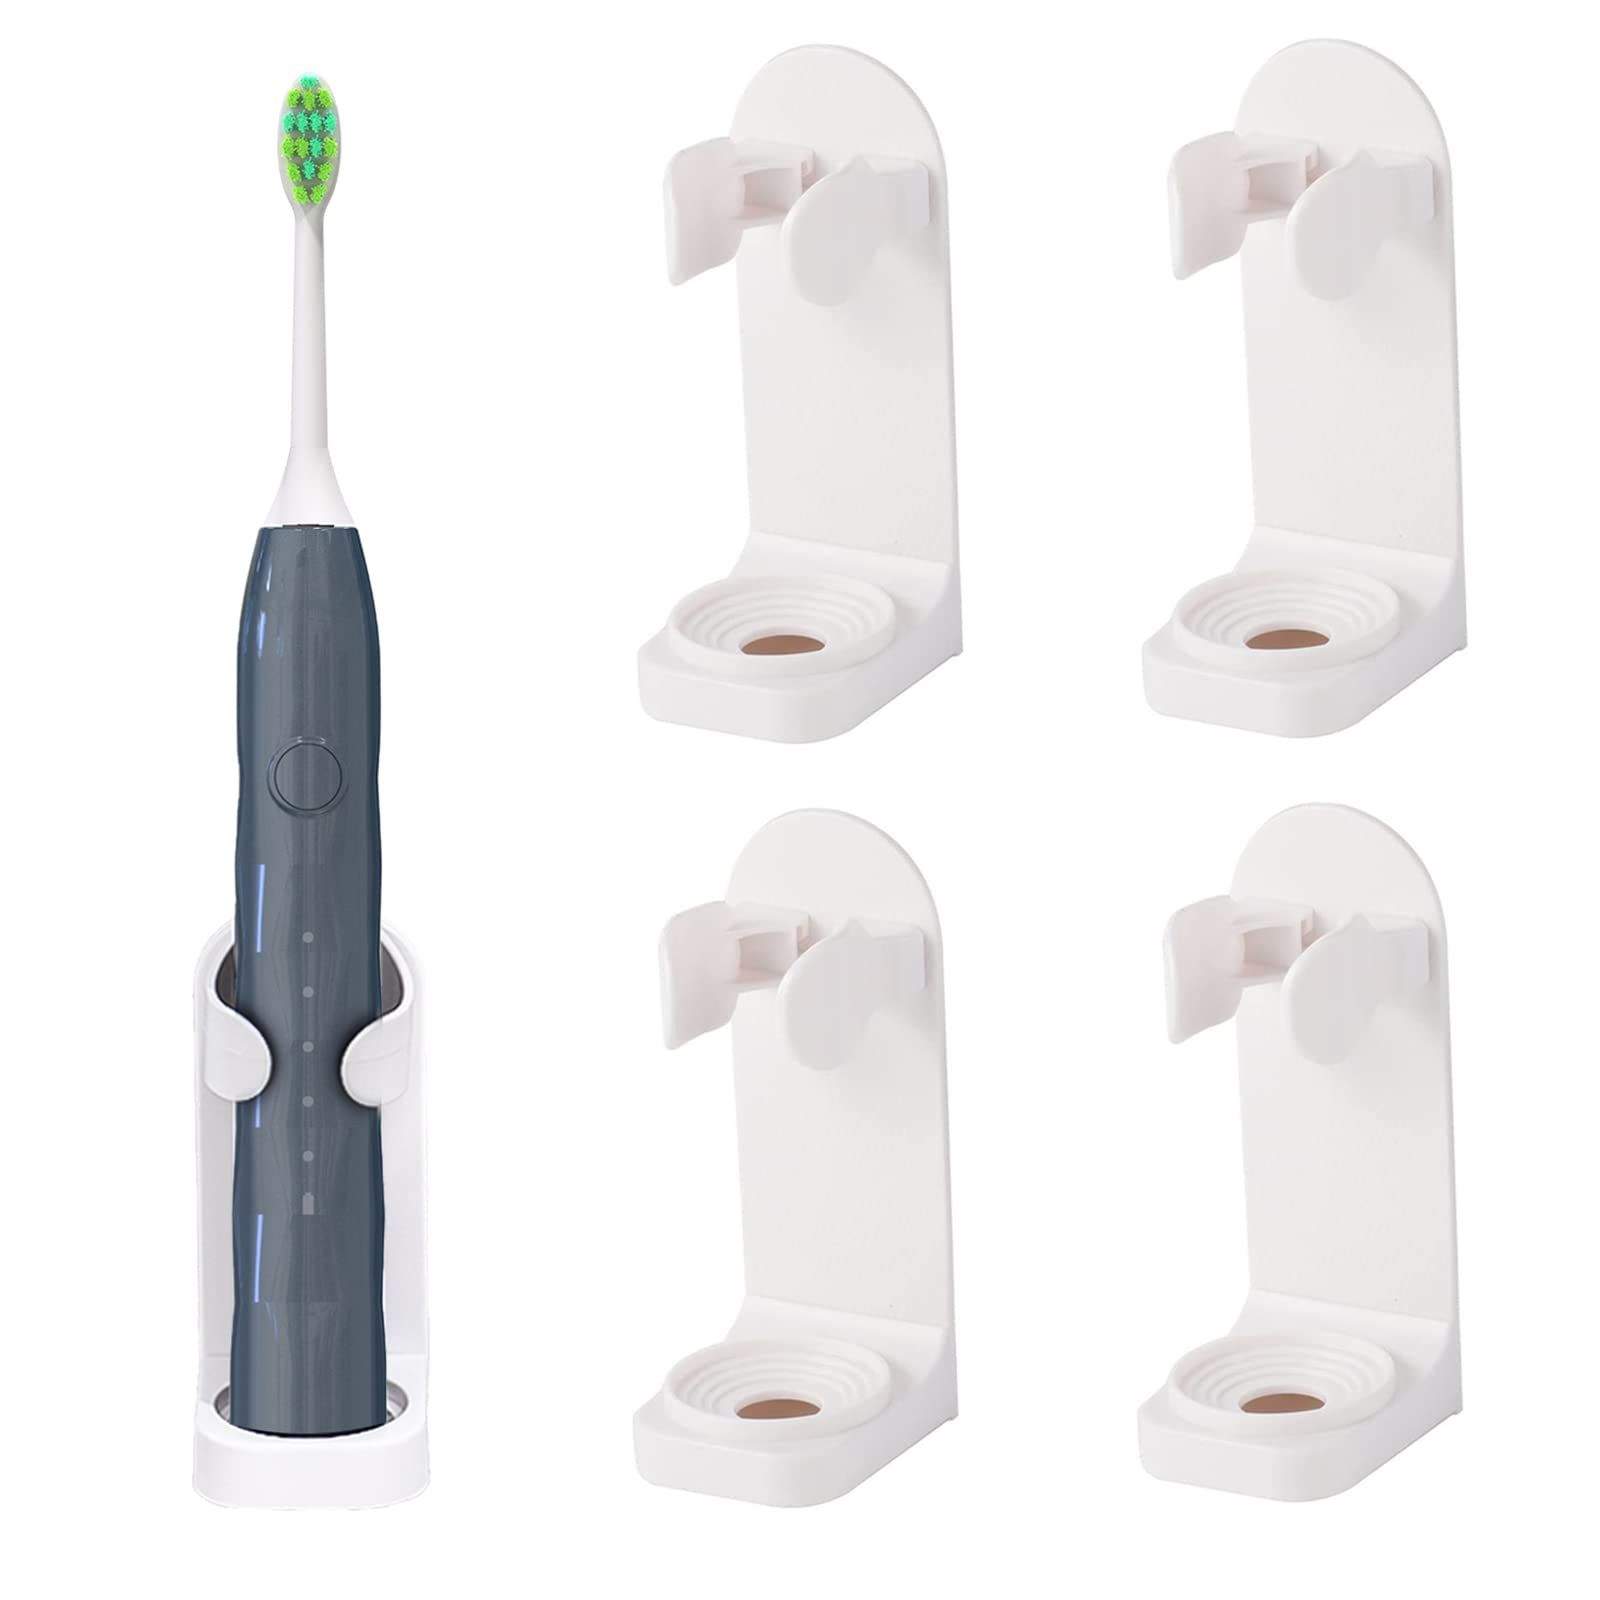 5個電動歯ブラシホルダー 壁掛け 浴室用 粘着式歯ブラシホルダー 歯ブラシオーガナイザー 省スペースで乾燥し続ける (White)